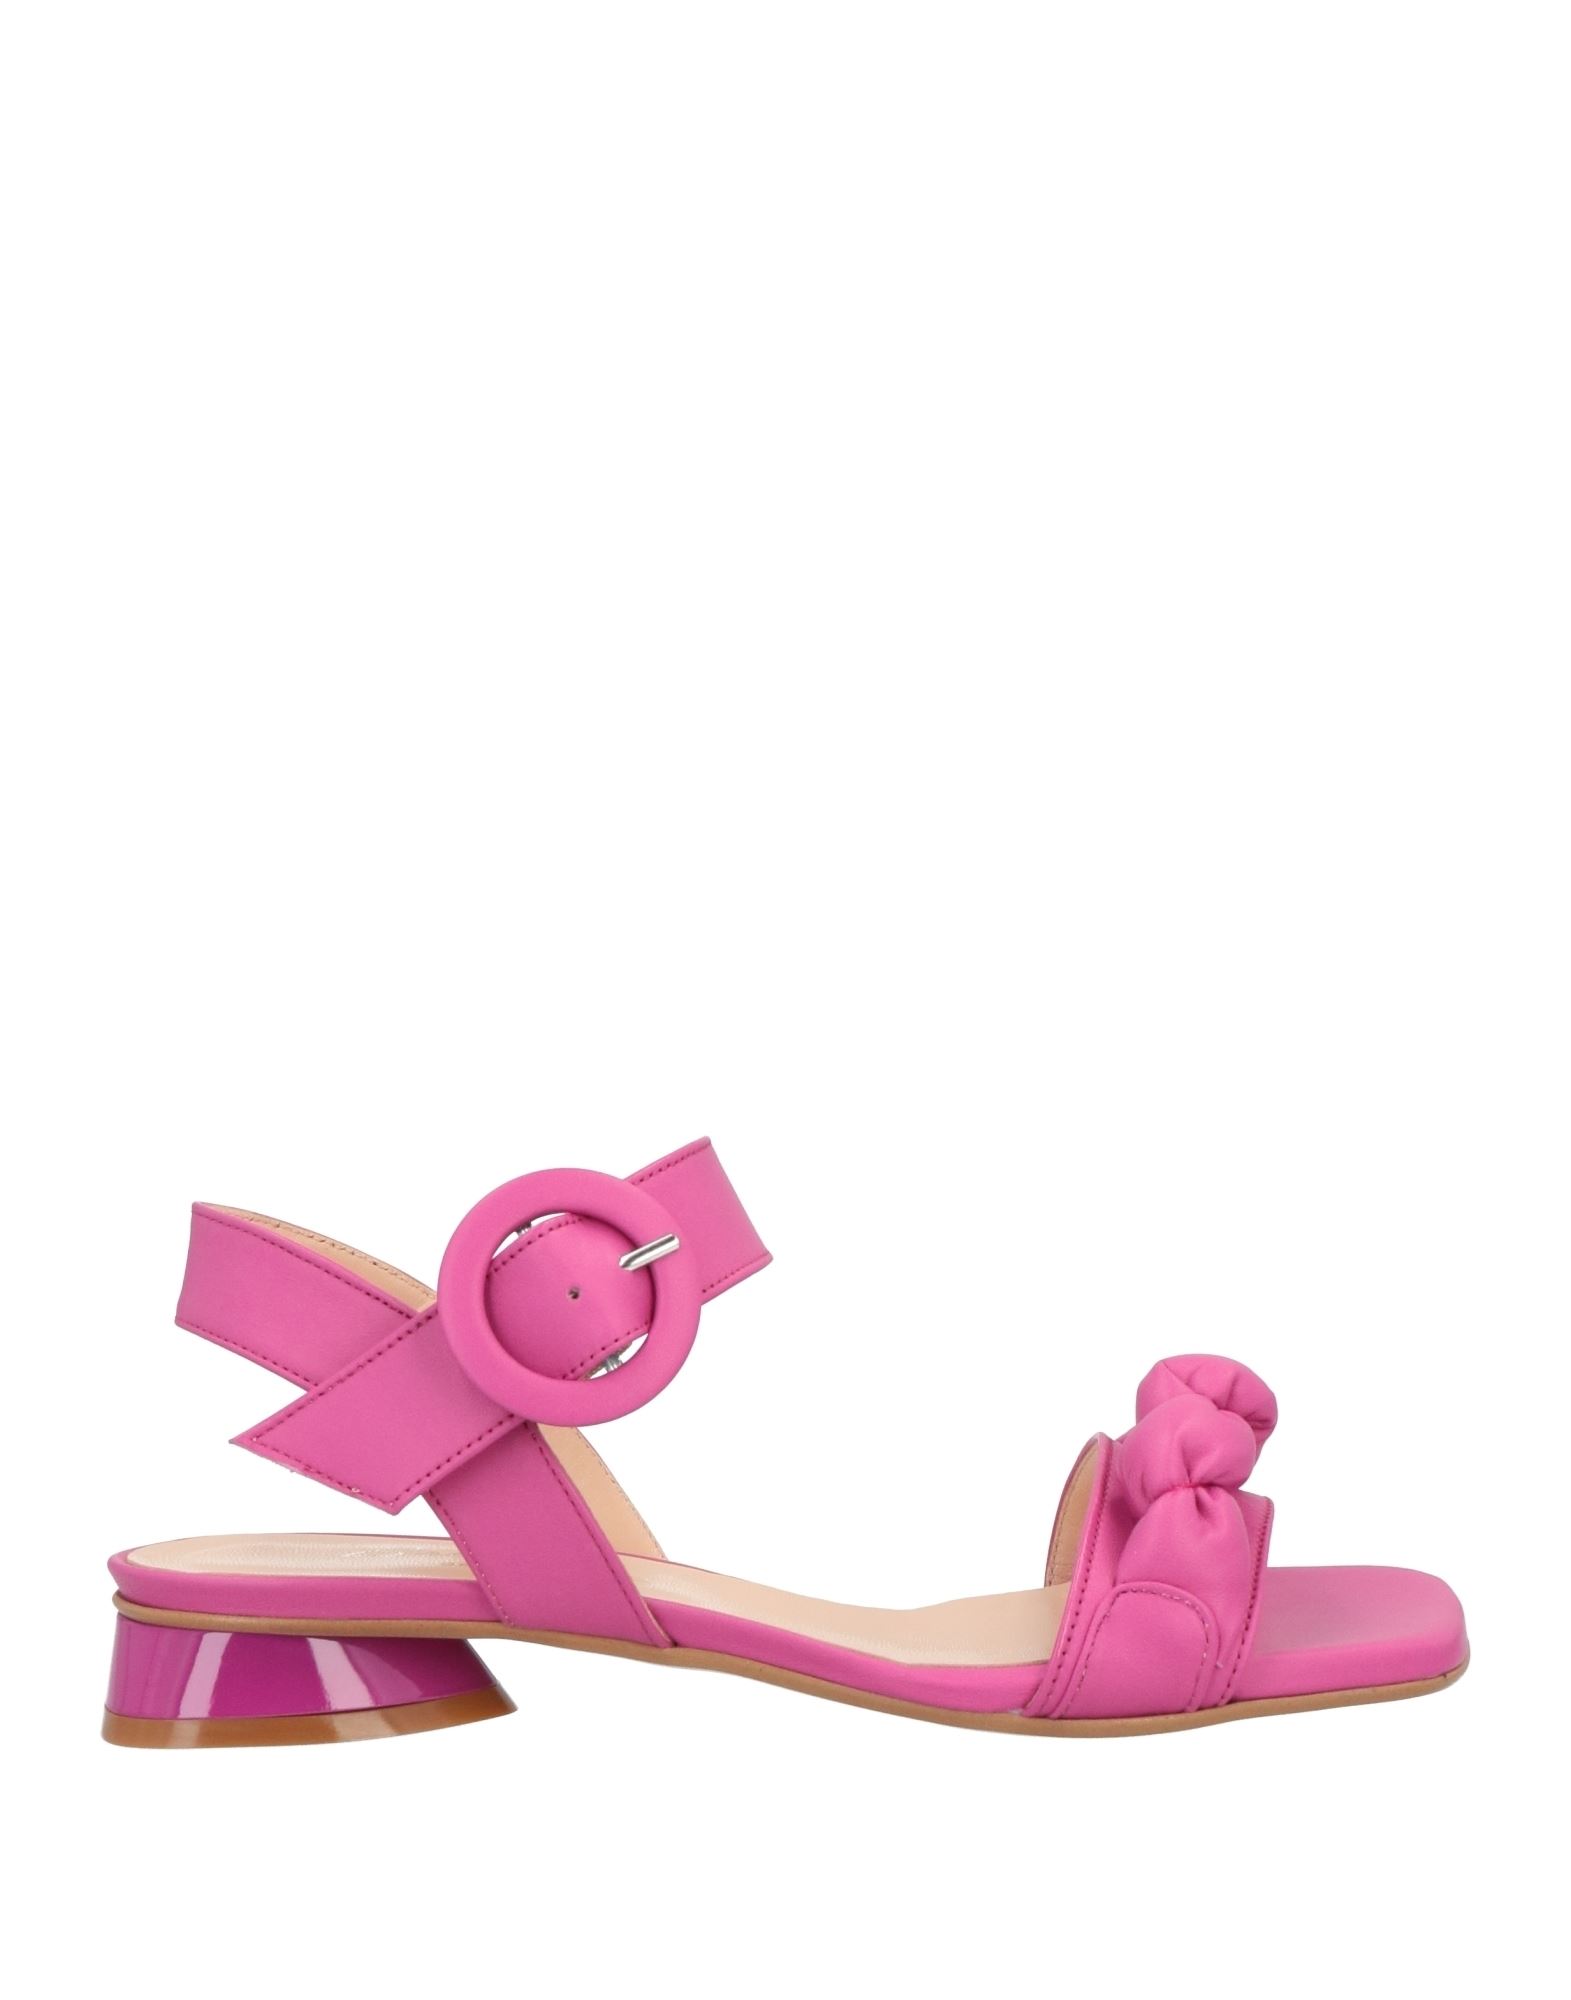 Bruglia Sandals In Pink